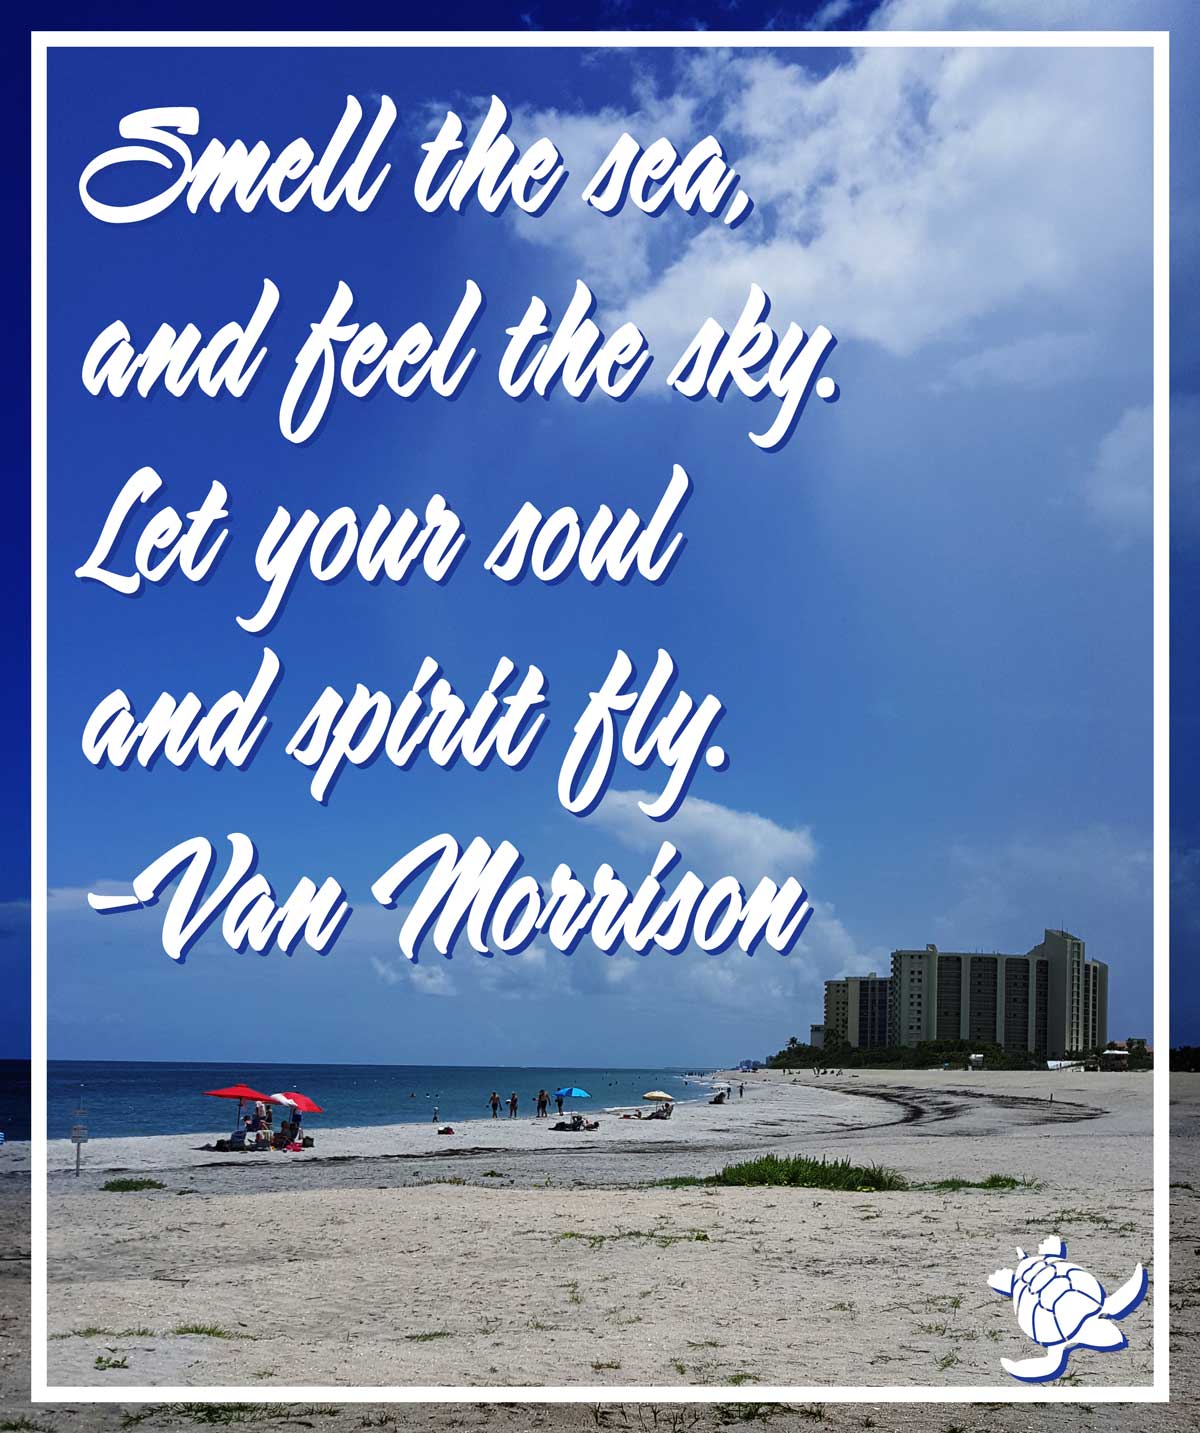 Van Morrison beach quote • Waterfront Properties Blog1200 x 1433